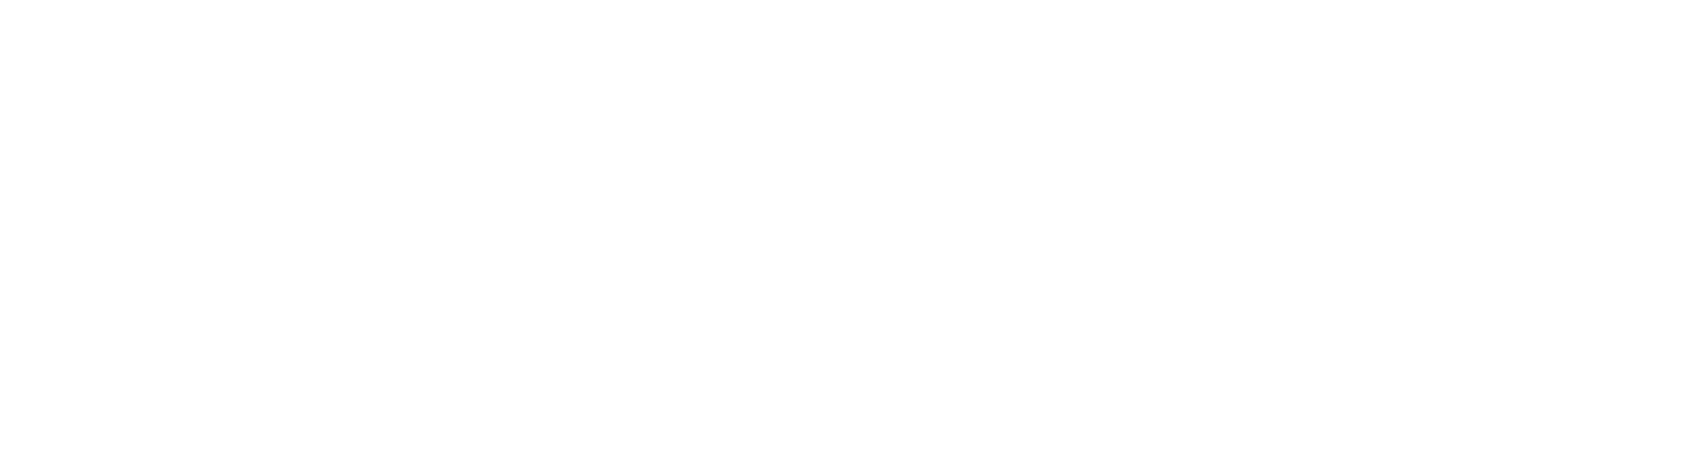 FIGS logo grand pour les fonds sombres (PNG transparent)